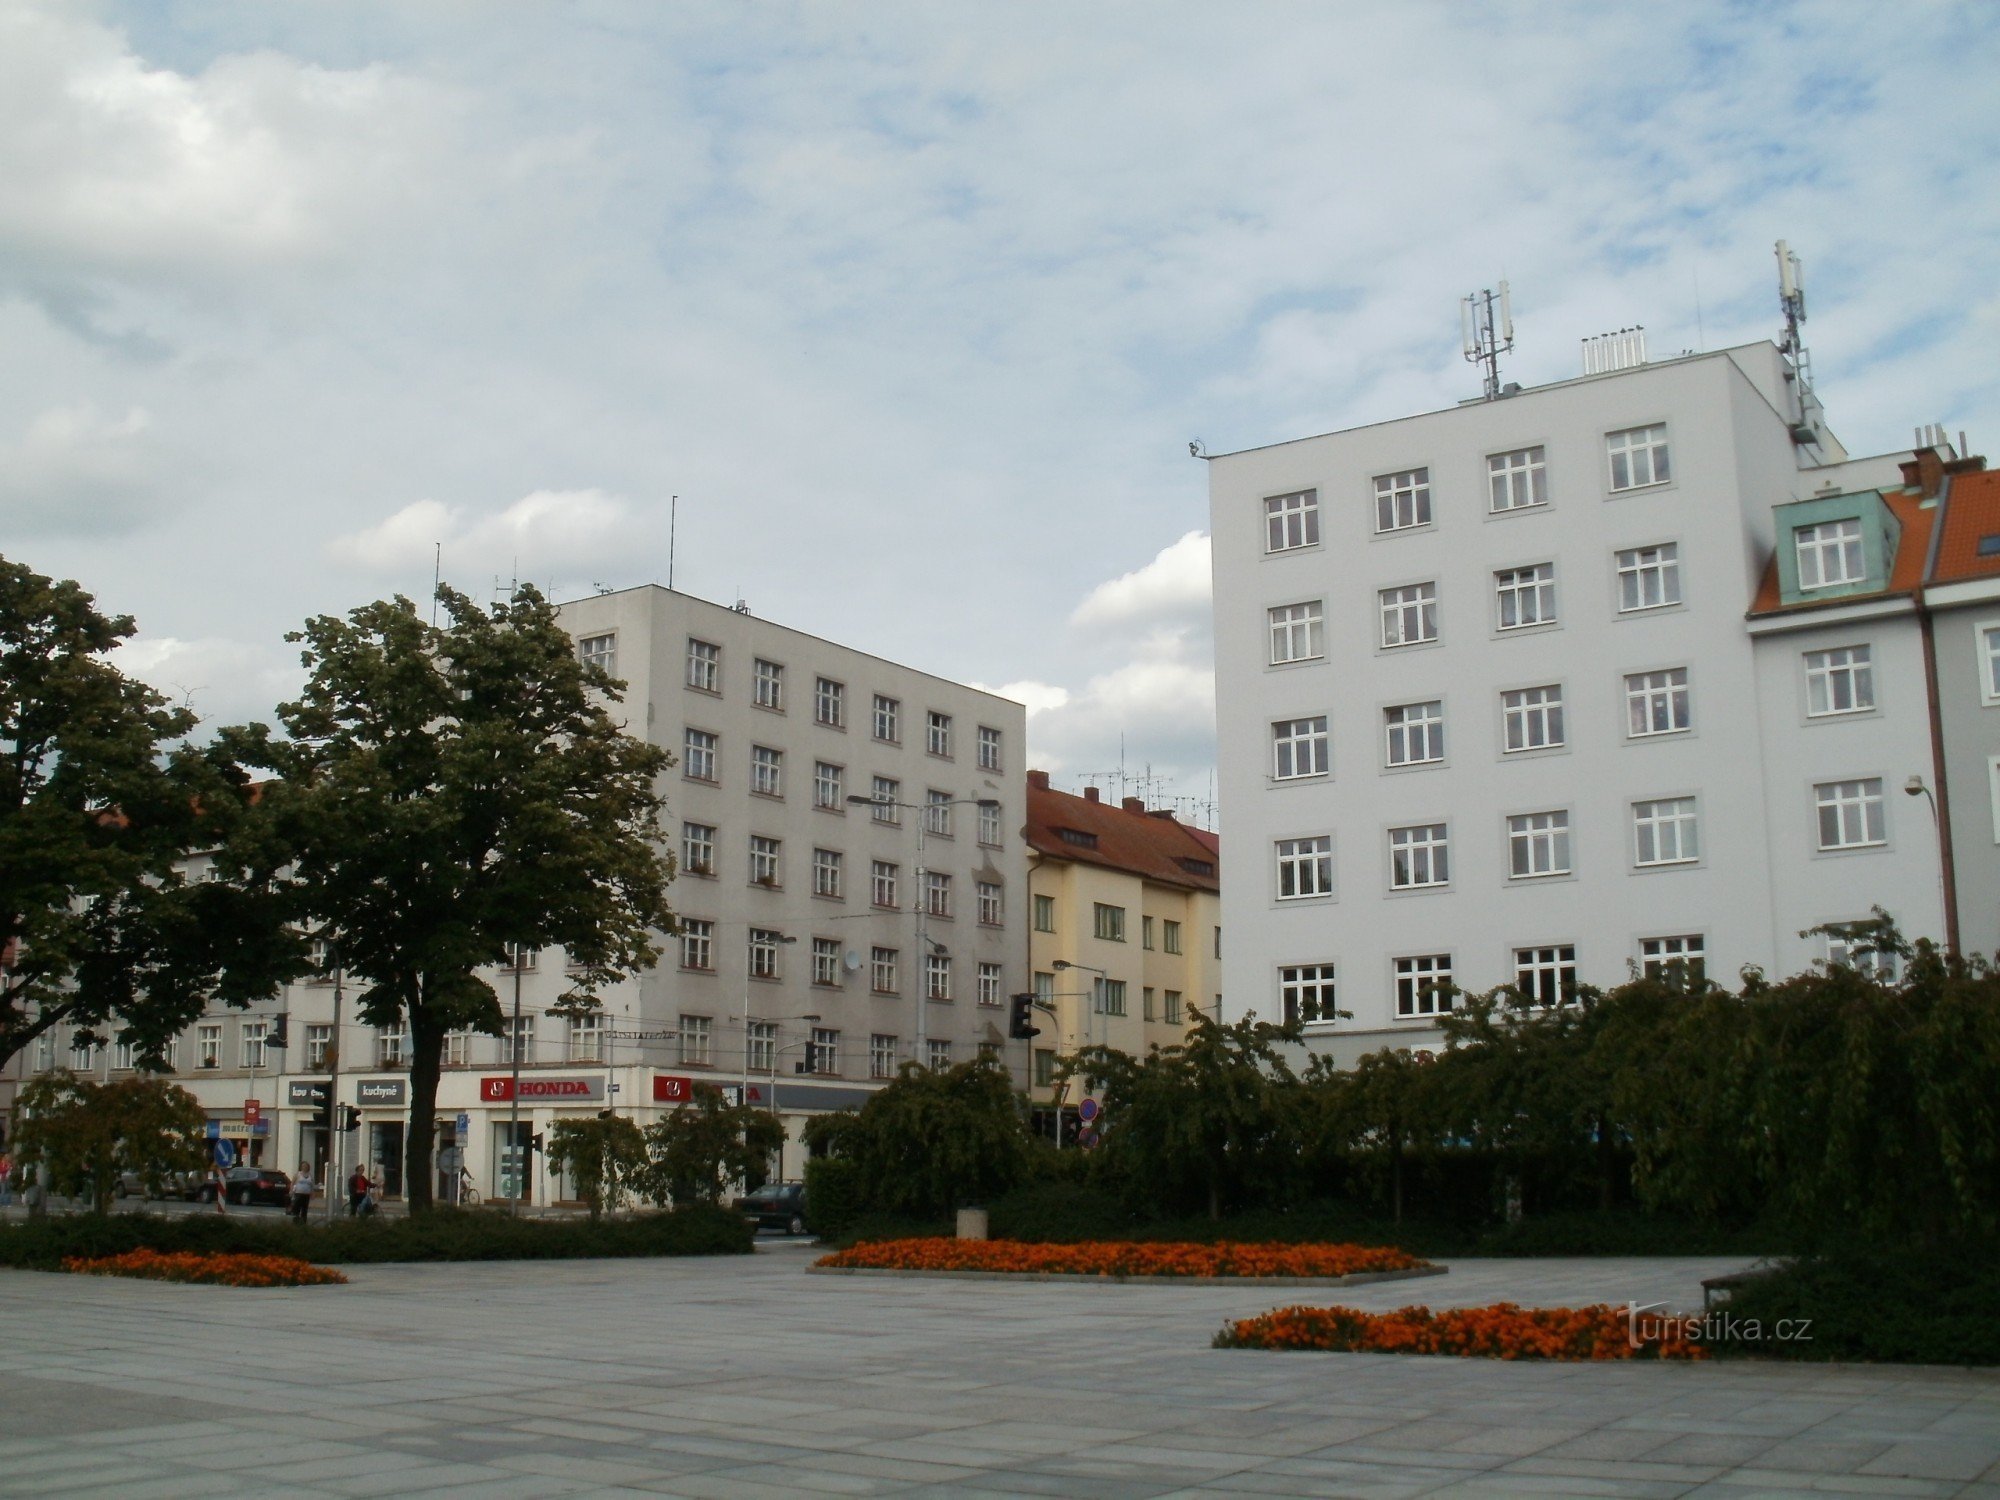 Hradec Králové – Ulrich tere